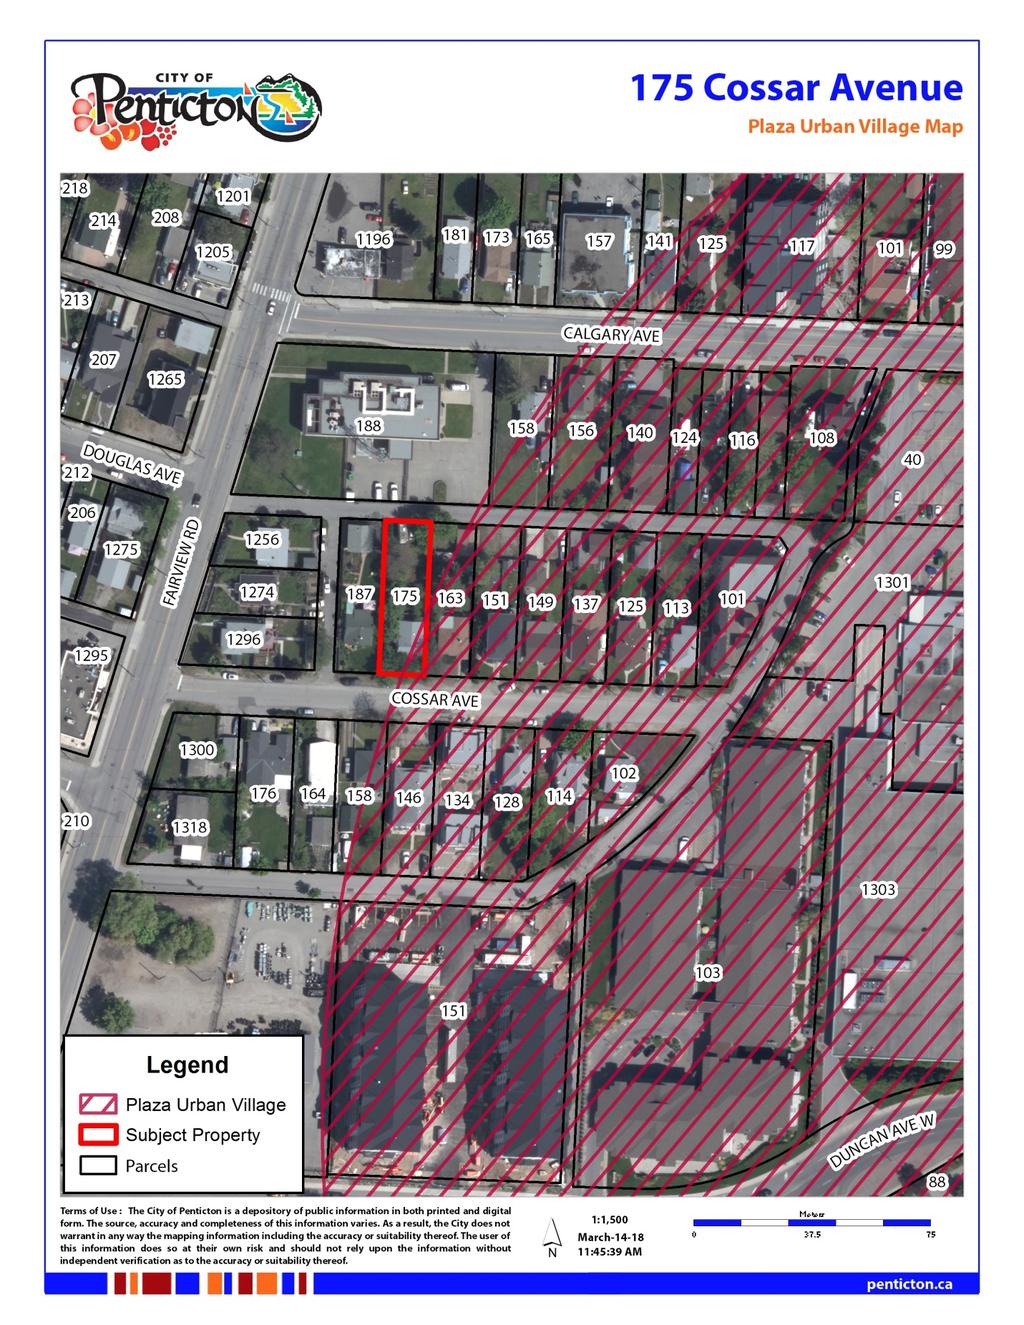 Attachment E Plaza Urban Village Map Figure 5 Subject Property Located